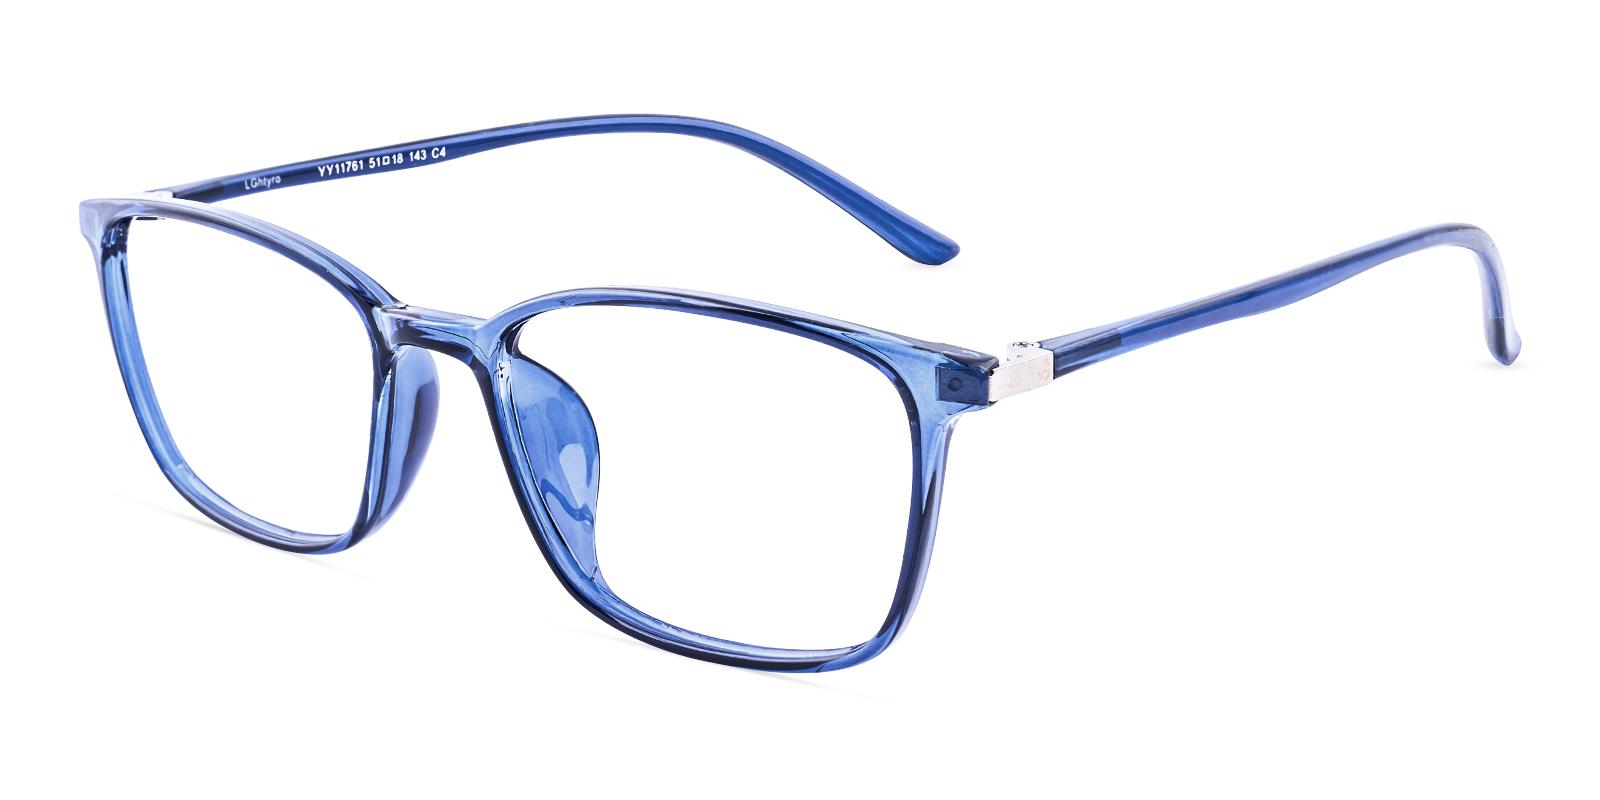 Polit Blue TR Eyeglasses , UniversalBridgeFit Frames from ABBE Glasses